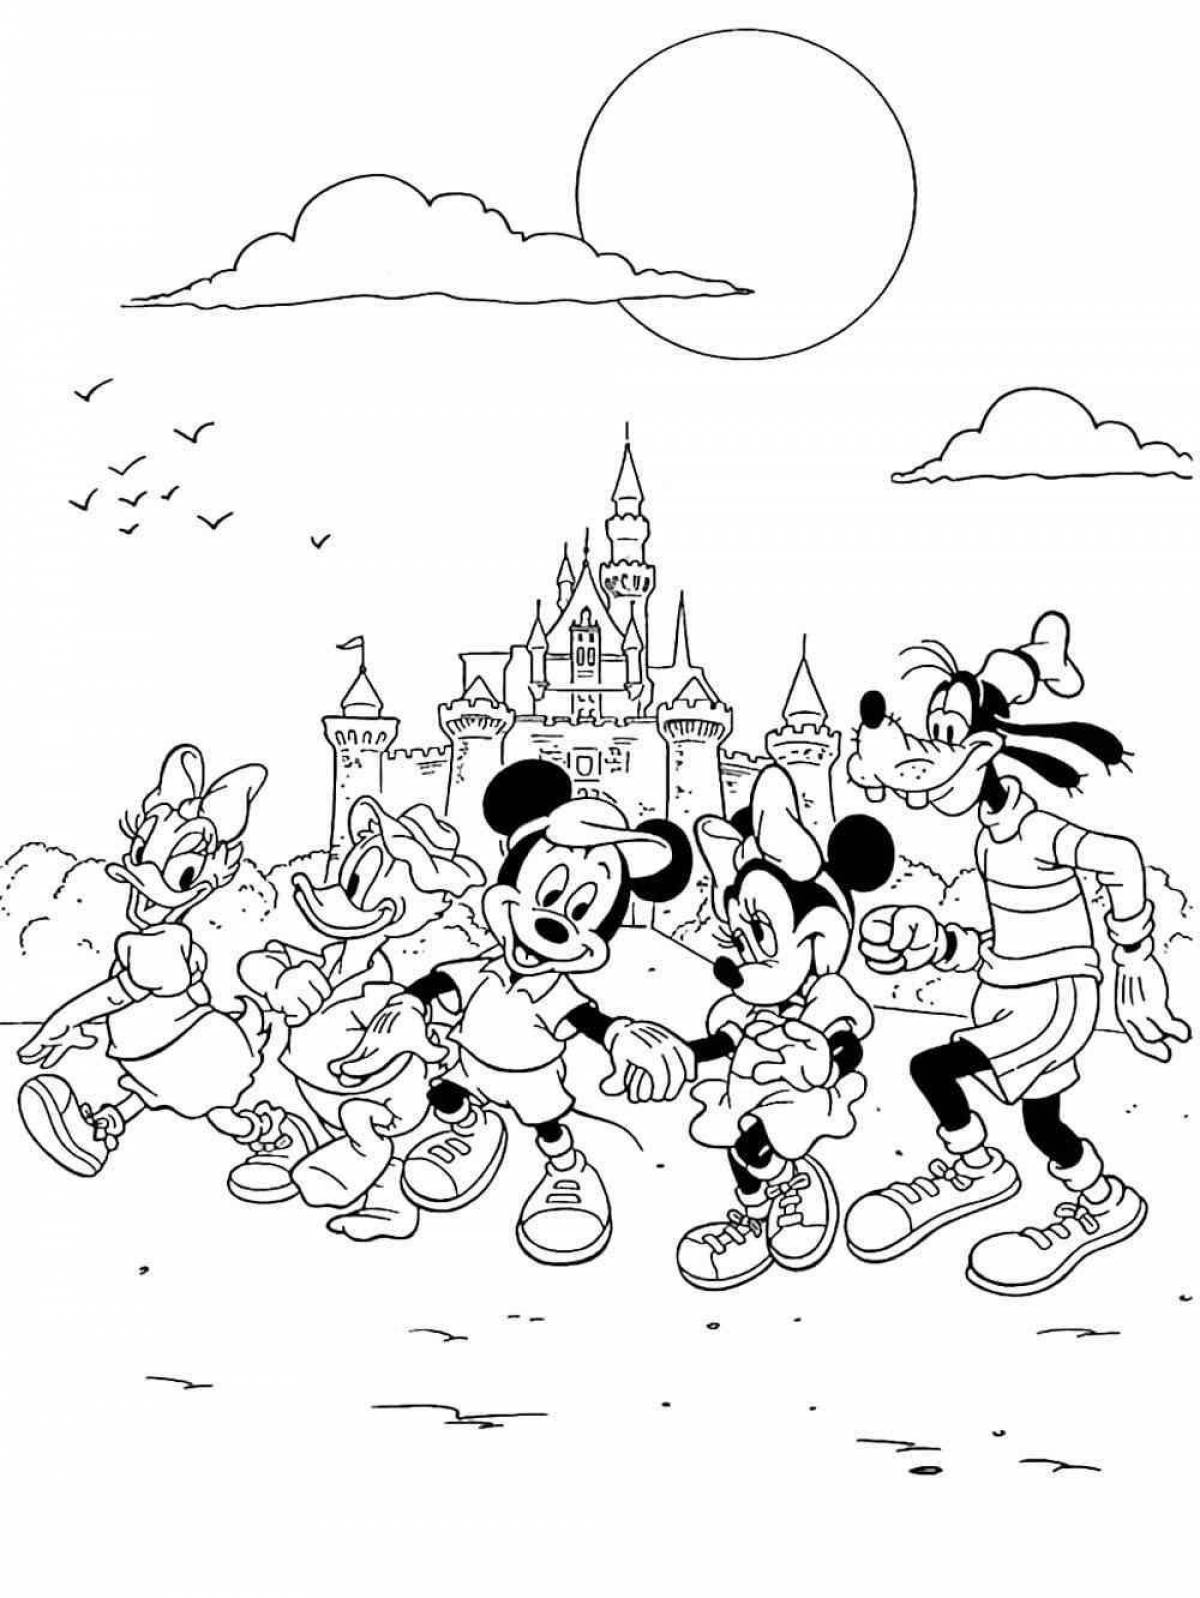 Disneyland coloring book